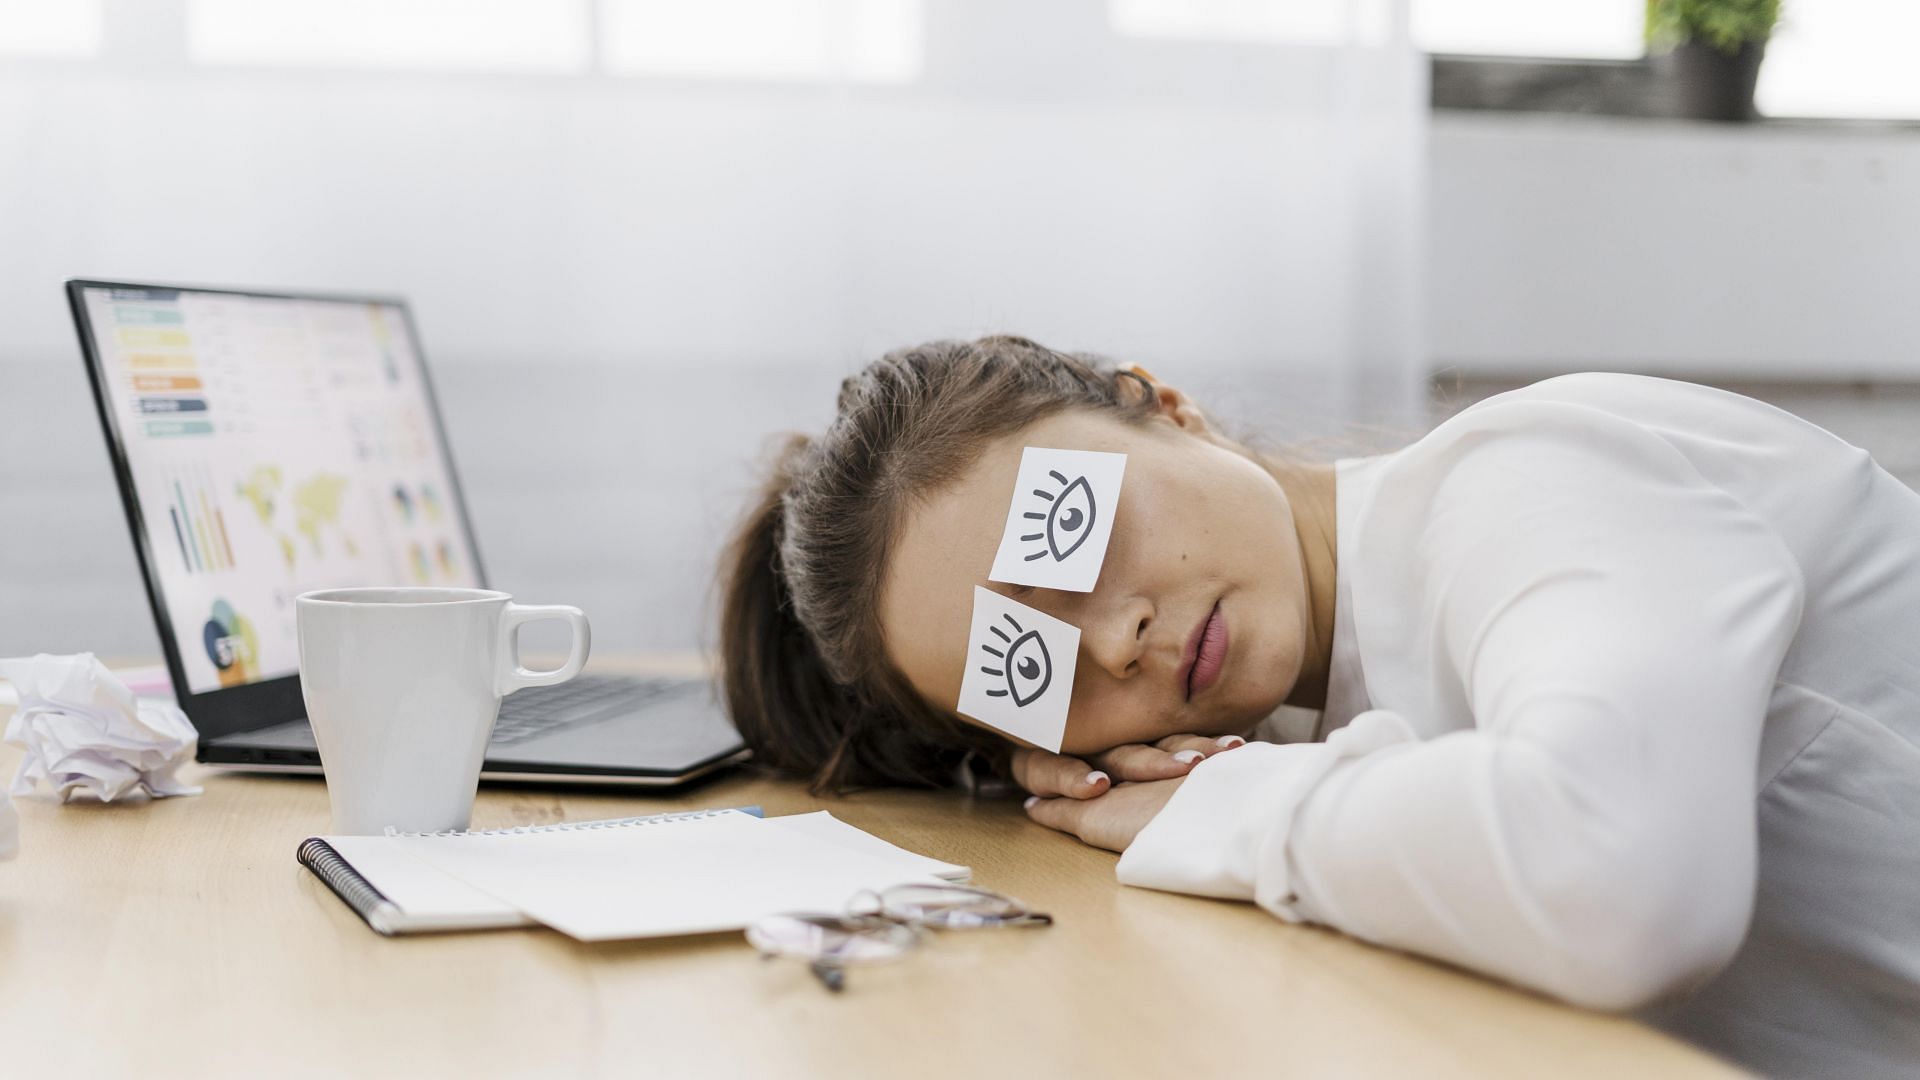 Shift Work Sleep Disorder is now a common phenomenon. (Image via Freepik/ Freepik)